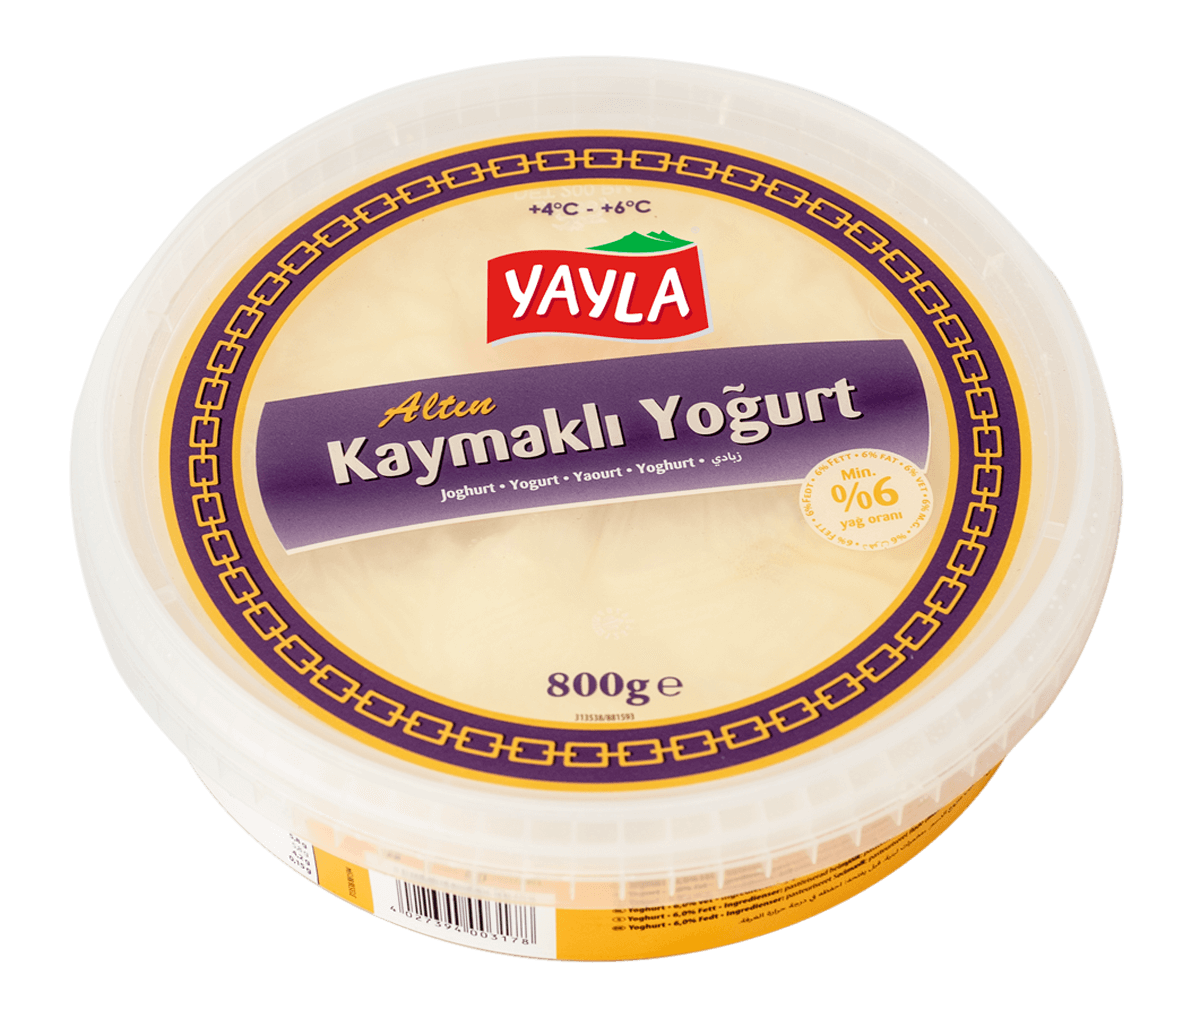 Yayla Kaymakli Yogurt / Joghurt mit Schichtrahm 800g